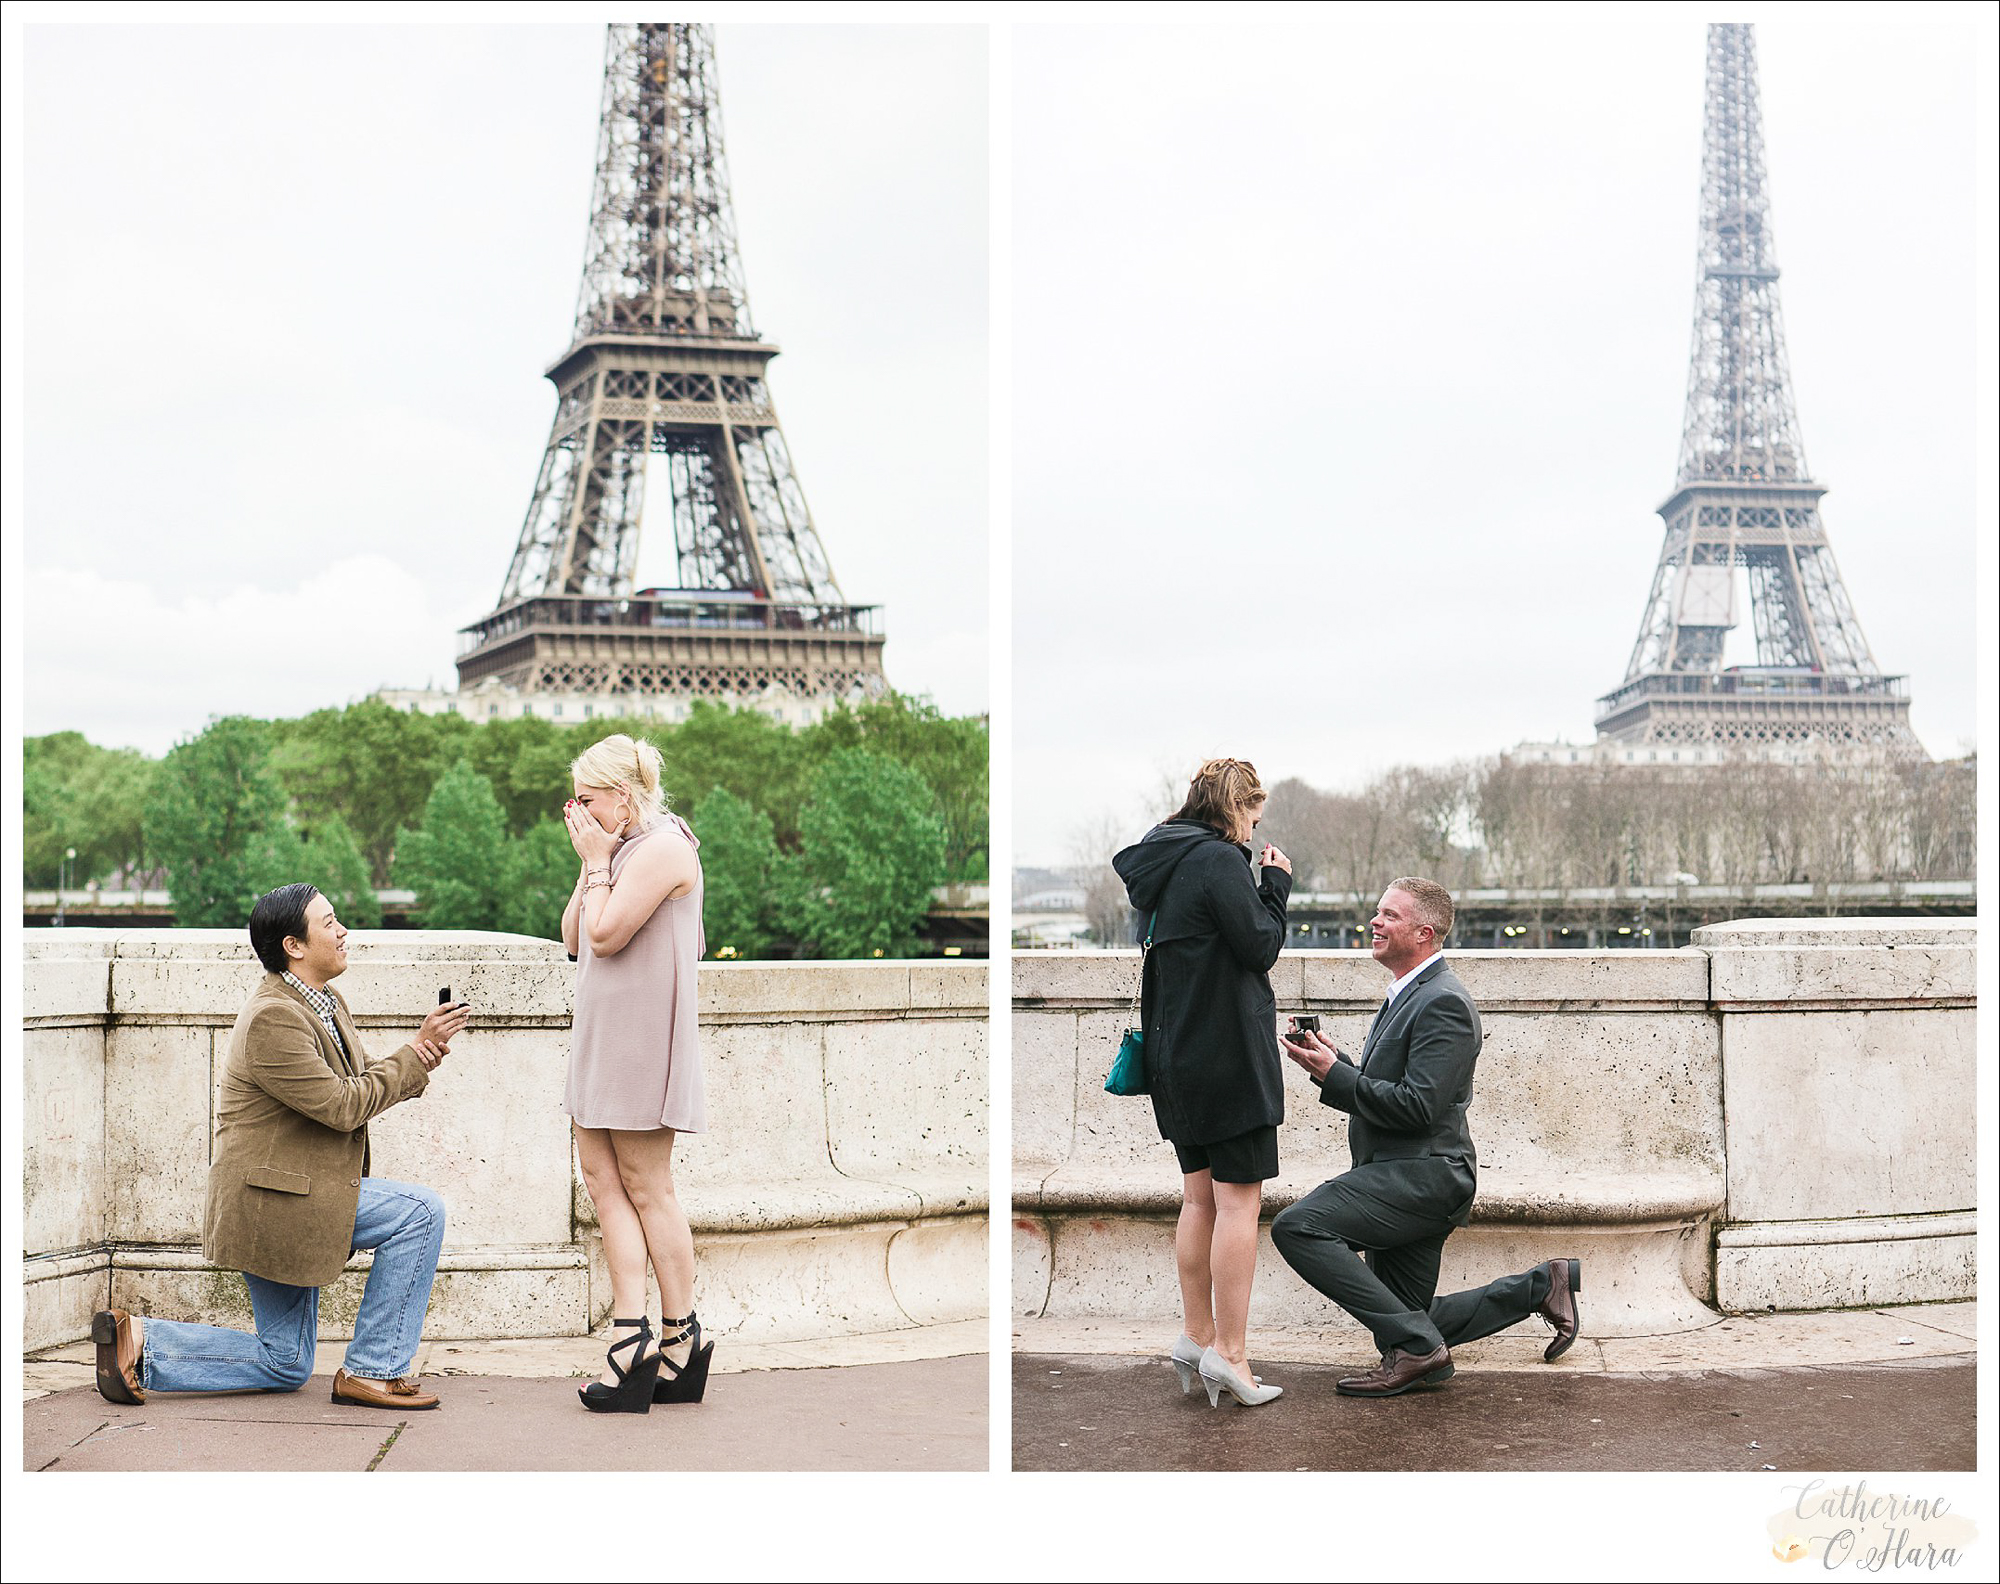 surprise proposal engagement photographer paris france-01.jpg